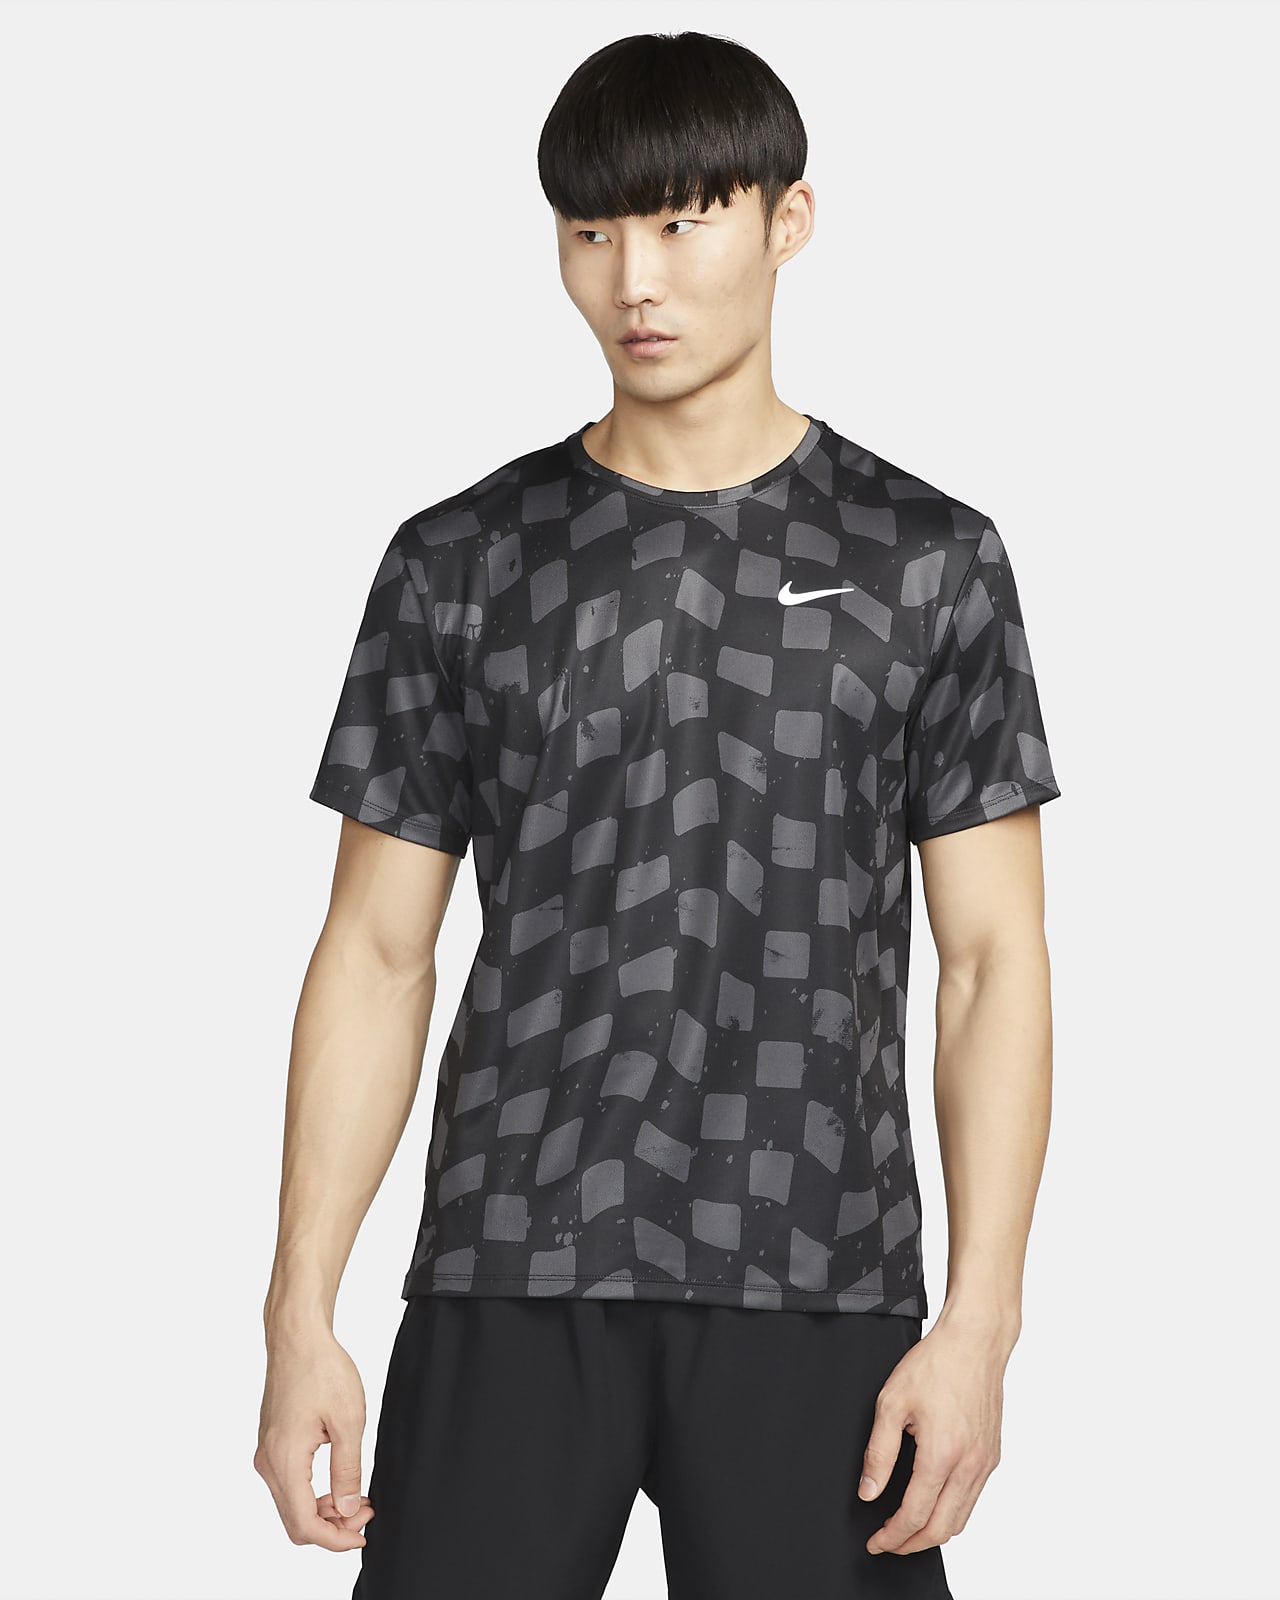 Ανδρική κοντομάνικη μπλούζα για τρέξιμο Nike Dri-FIT Miler